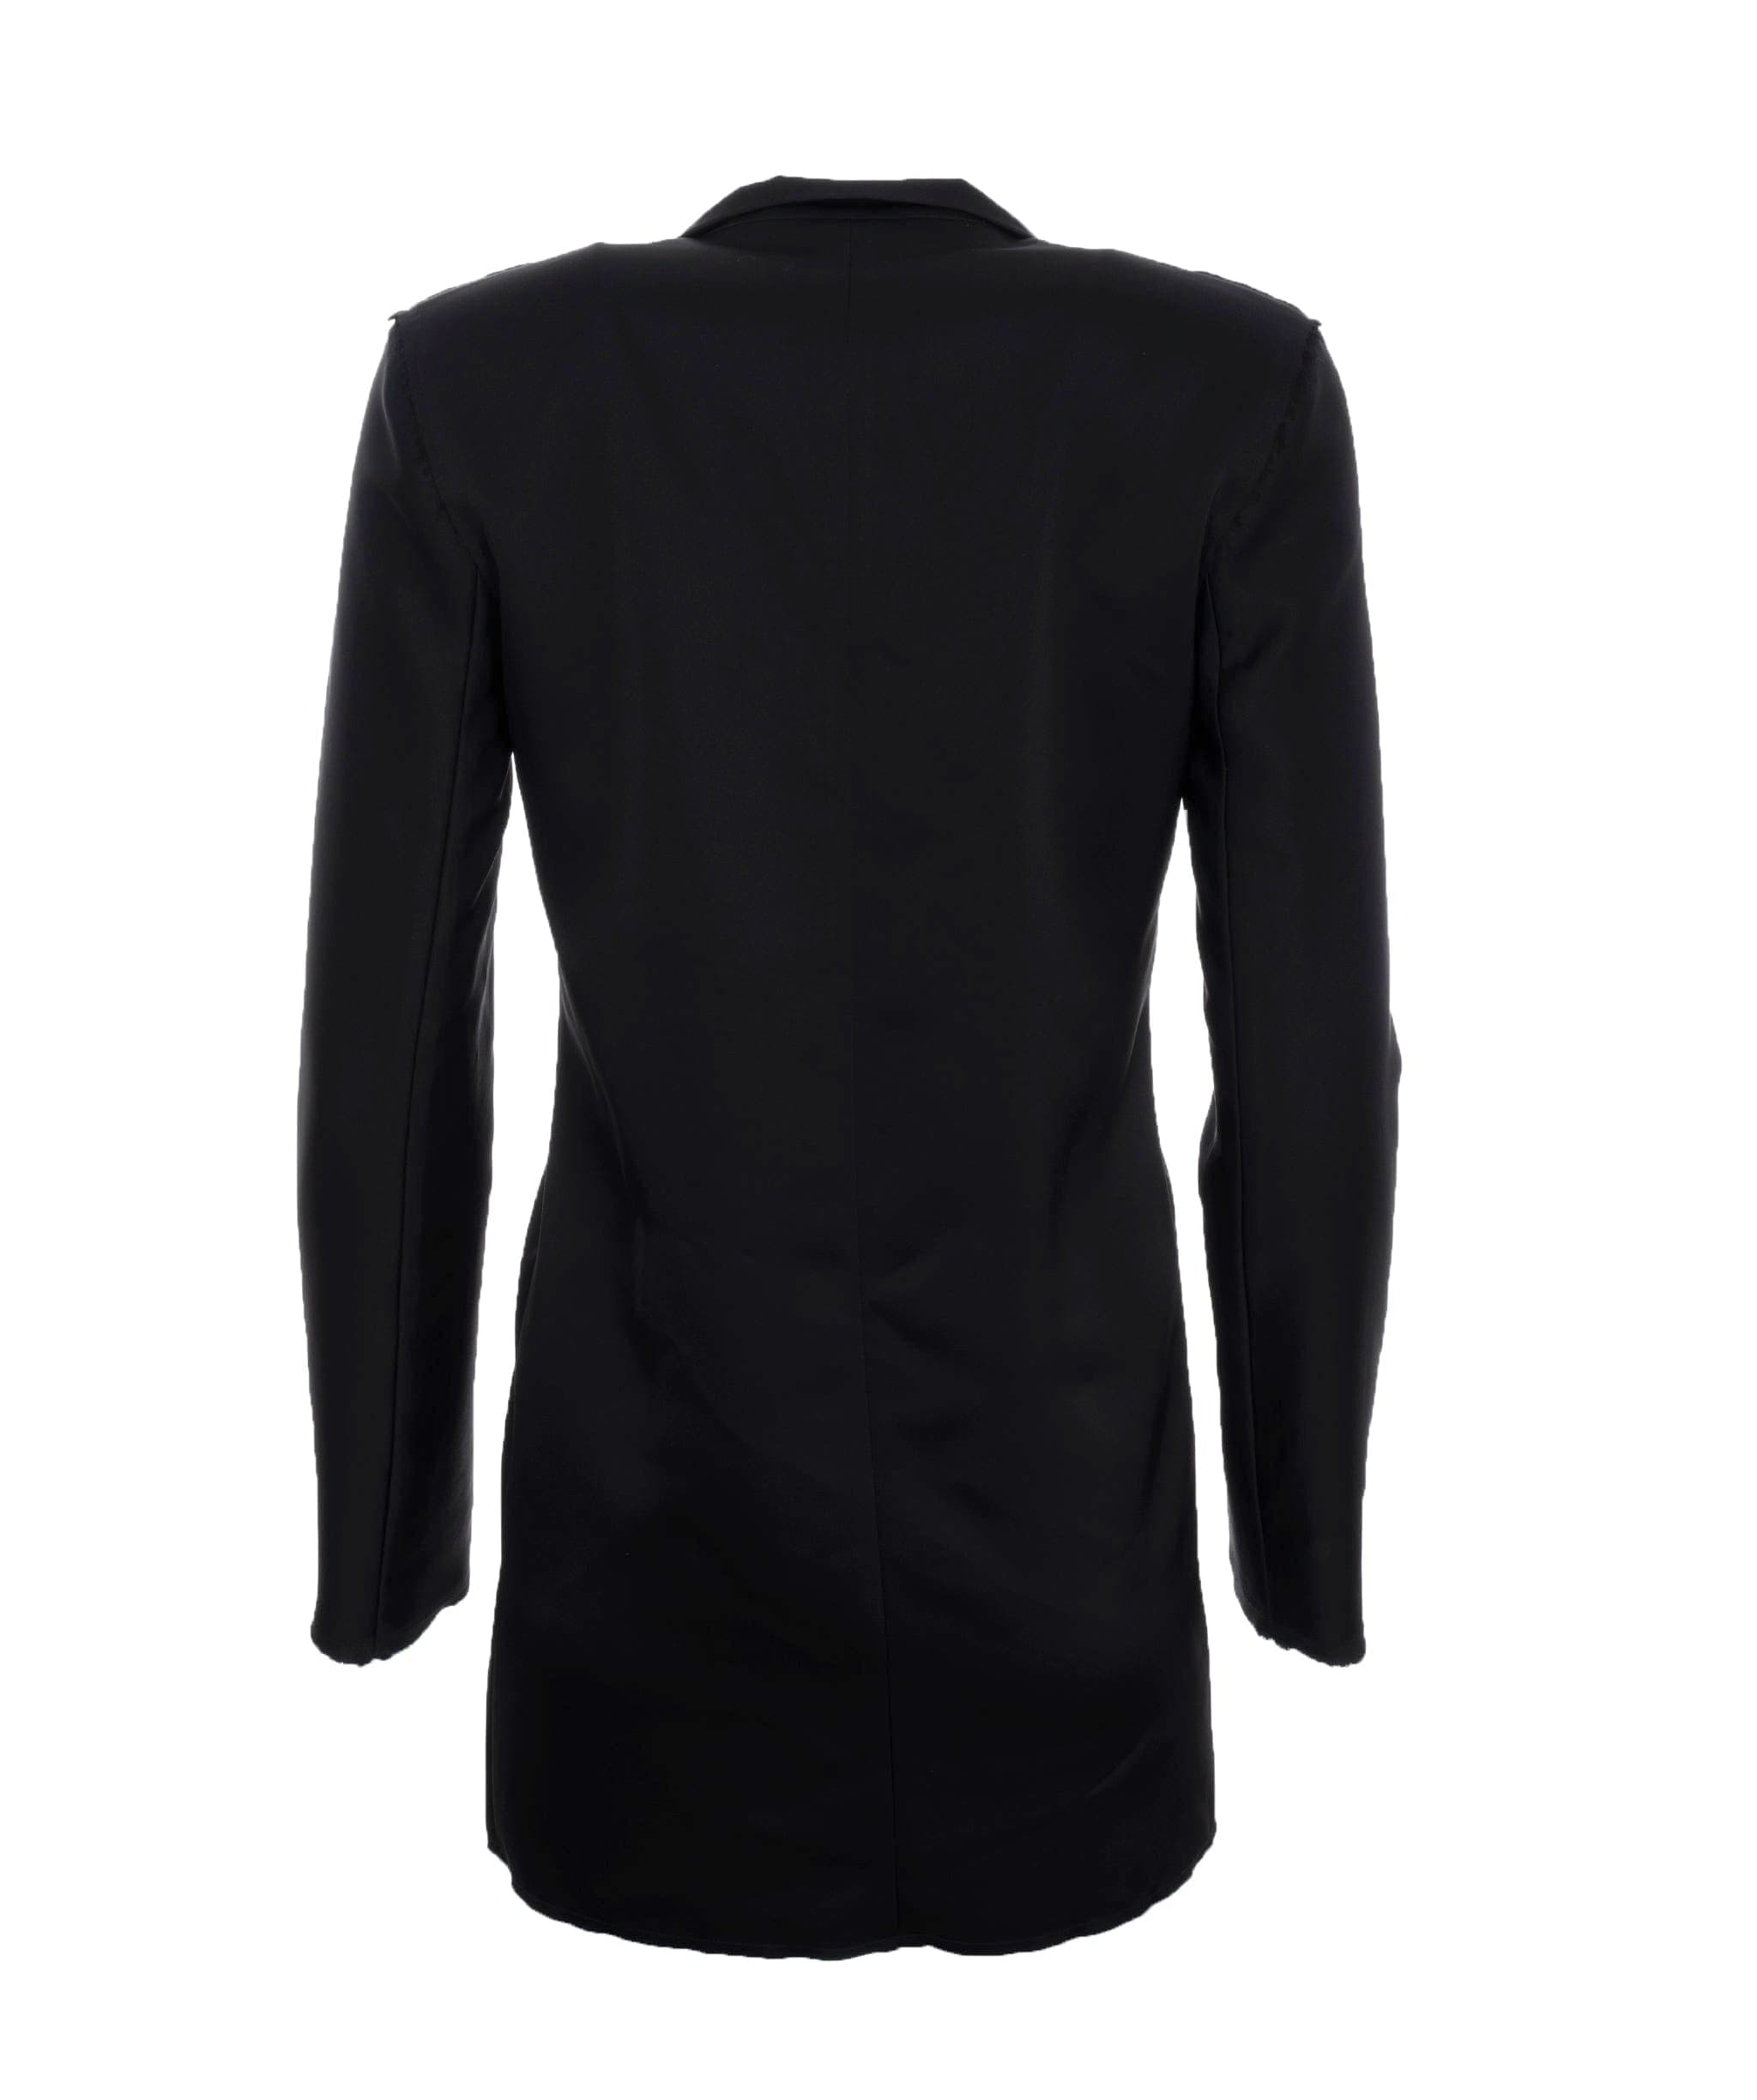 Loewe Loewe black jacket ALC0743